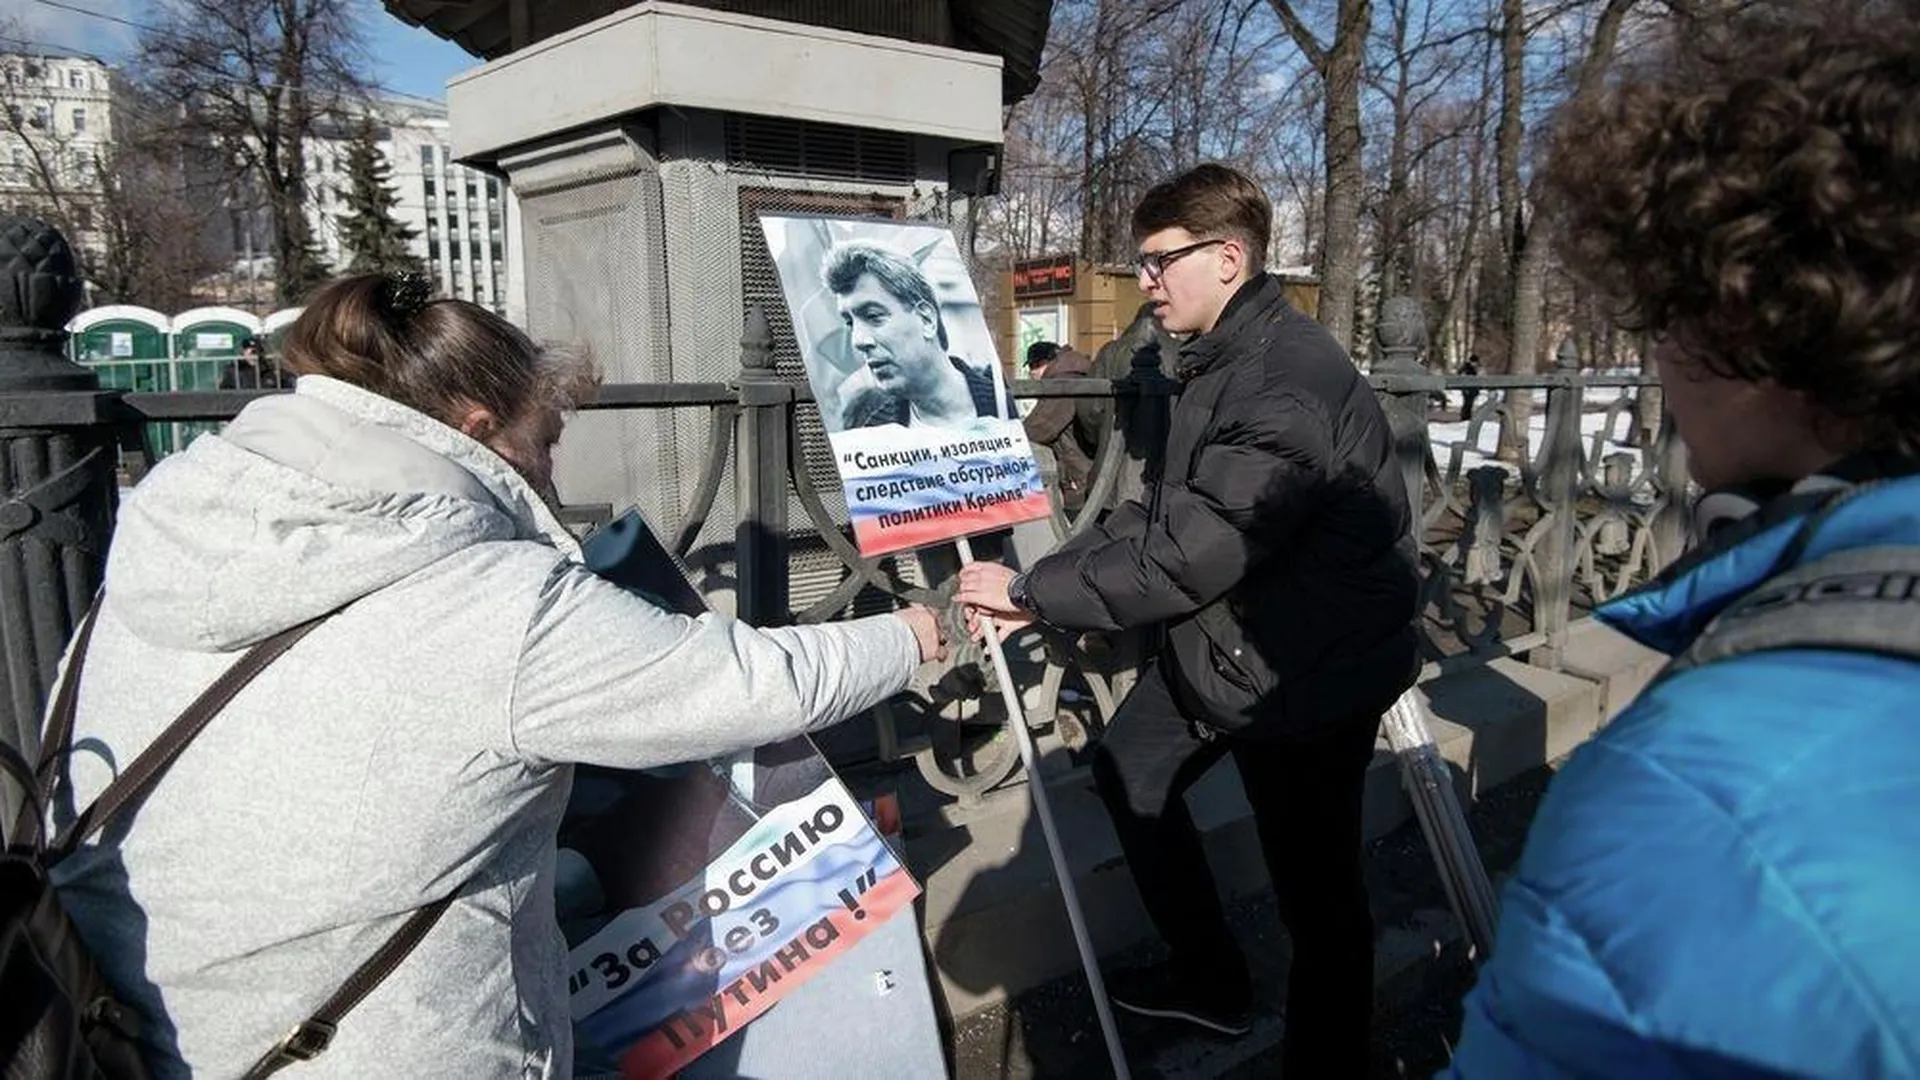 Открытое письмо для согласования шествия в память о Немцове передадут в мэрию Москвы